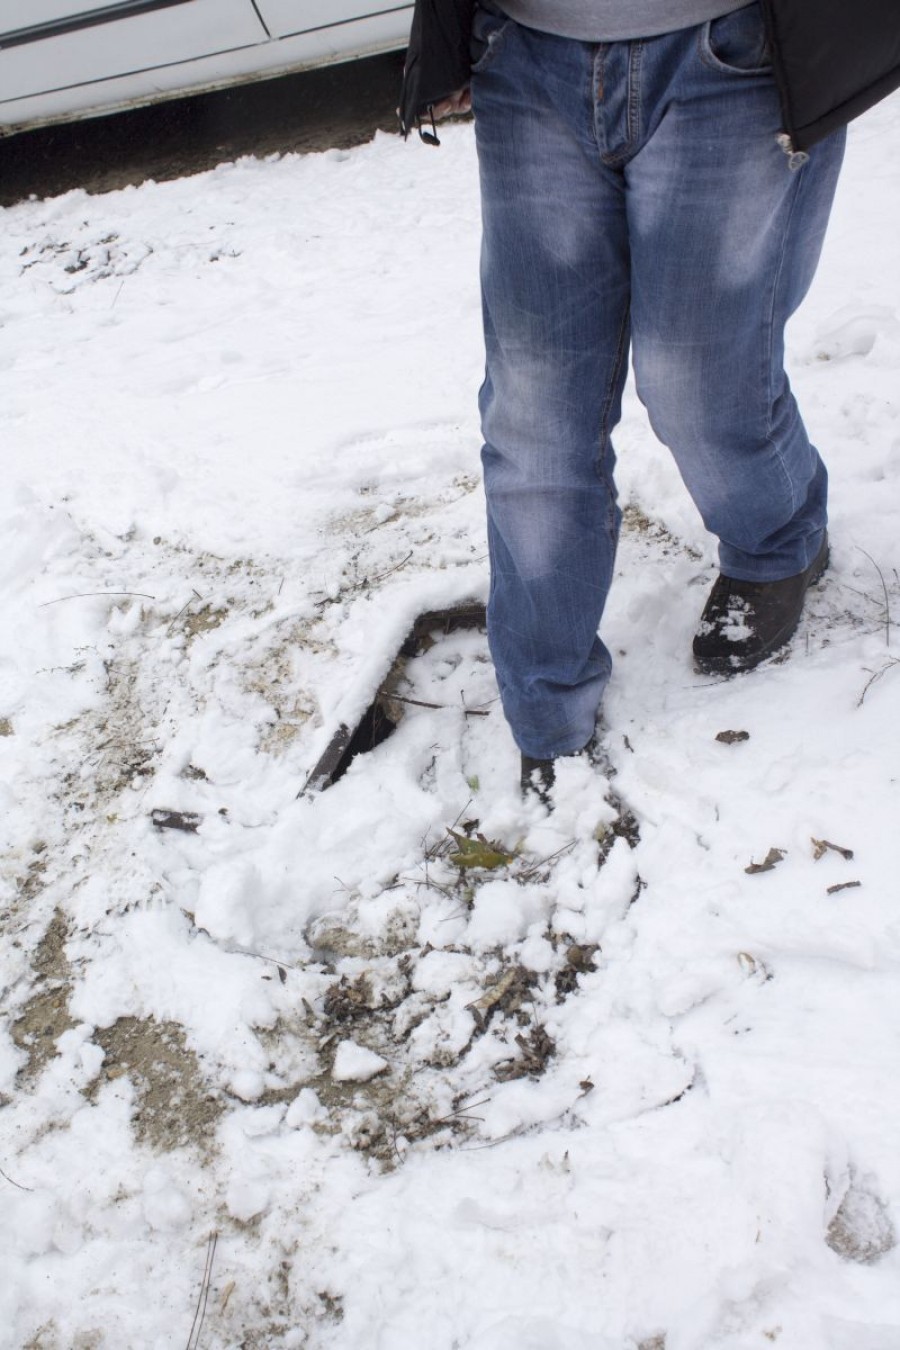 Sport extrem în condiţii de iarnă: Evitarea canalizărilor fără capac